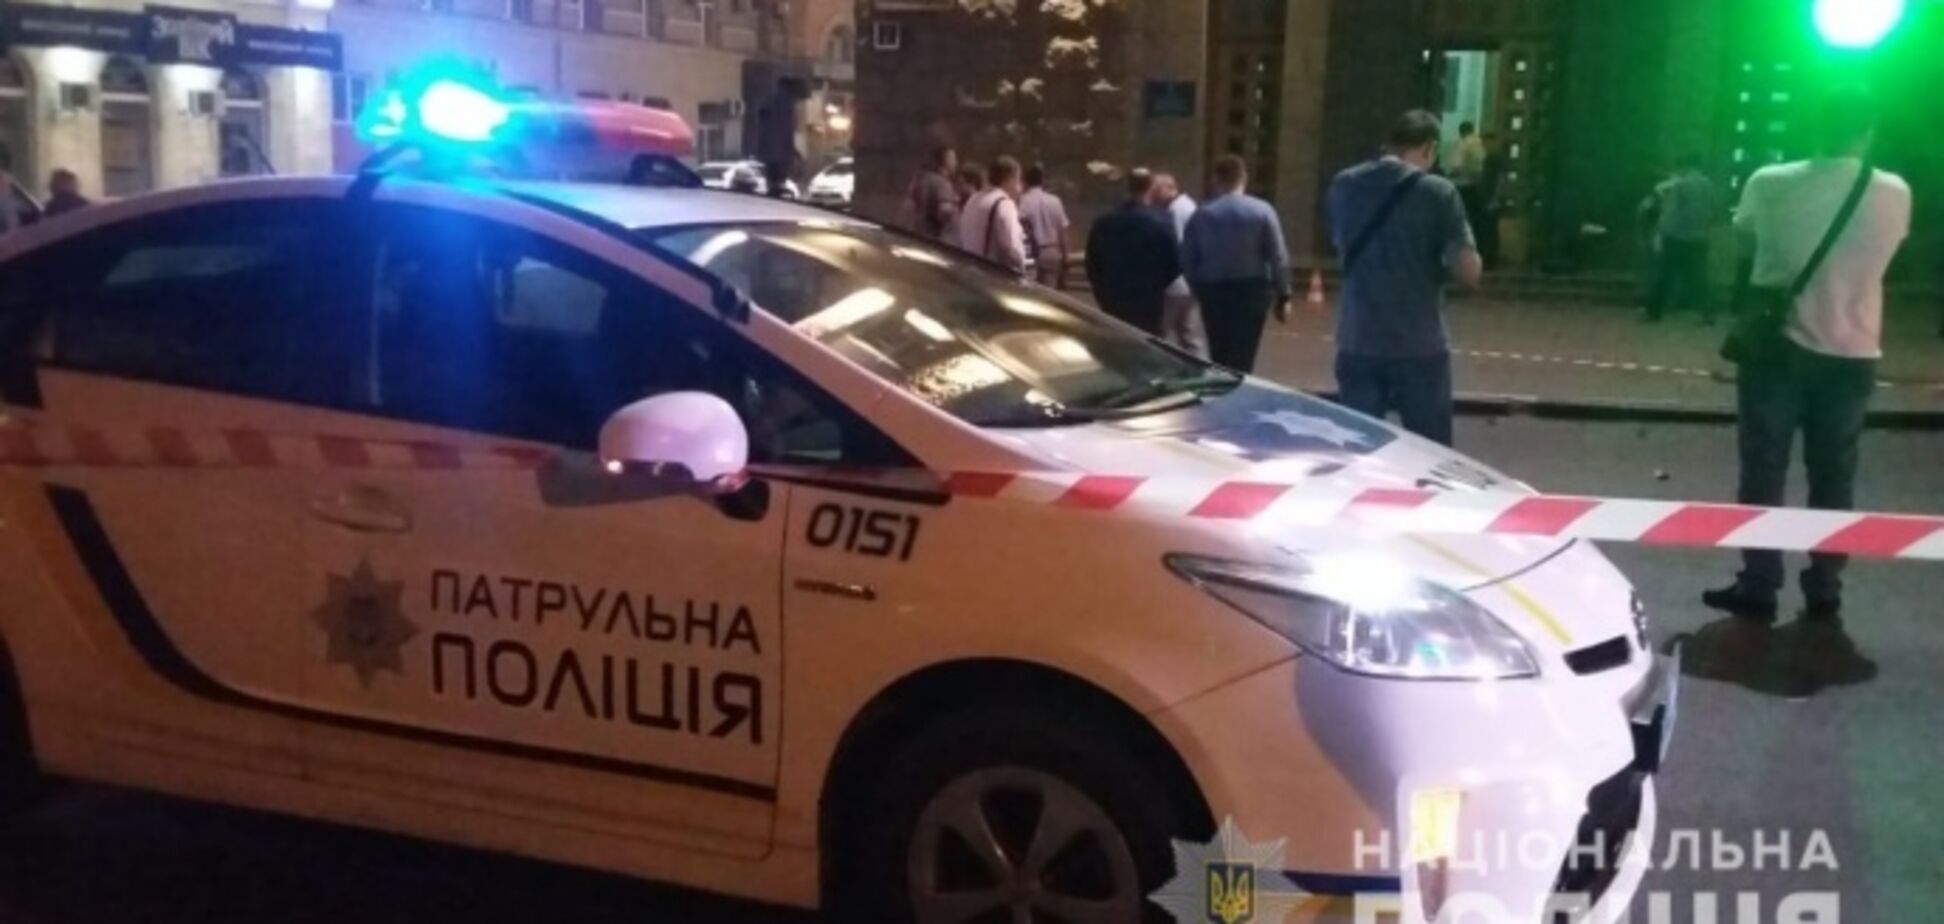  'В упор расстреливал': появились детали кровавого нападения на мэрию Харькова